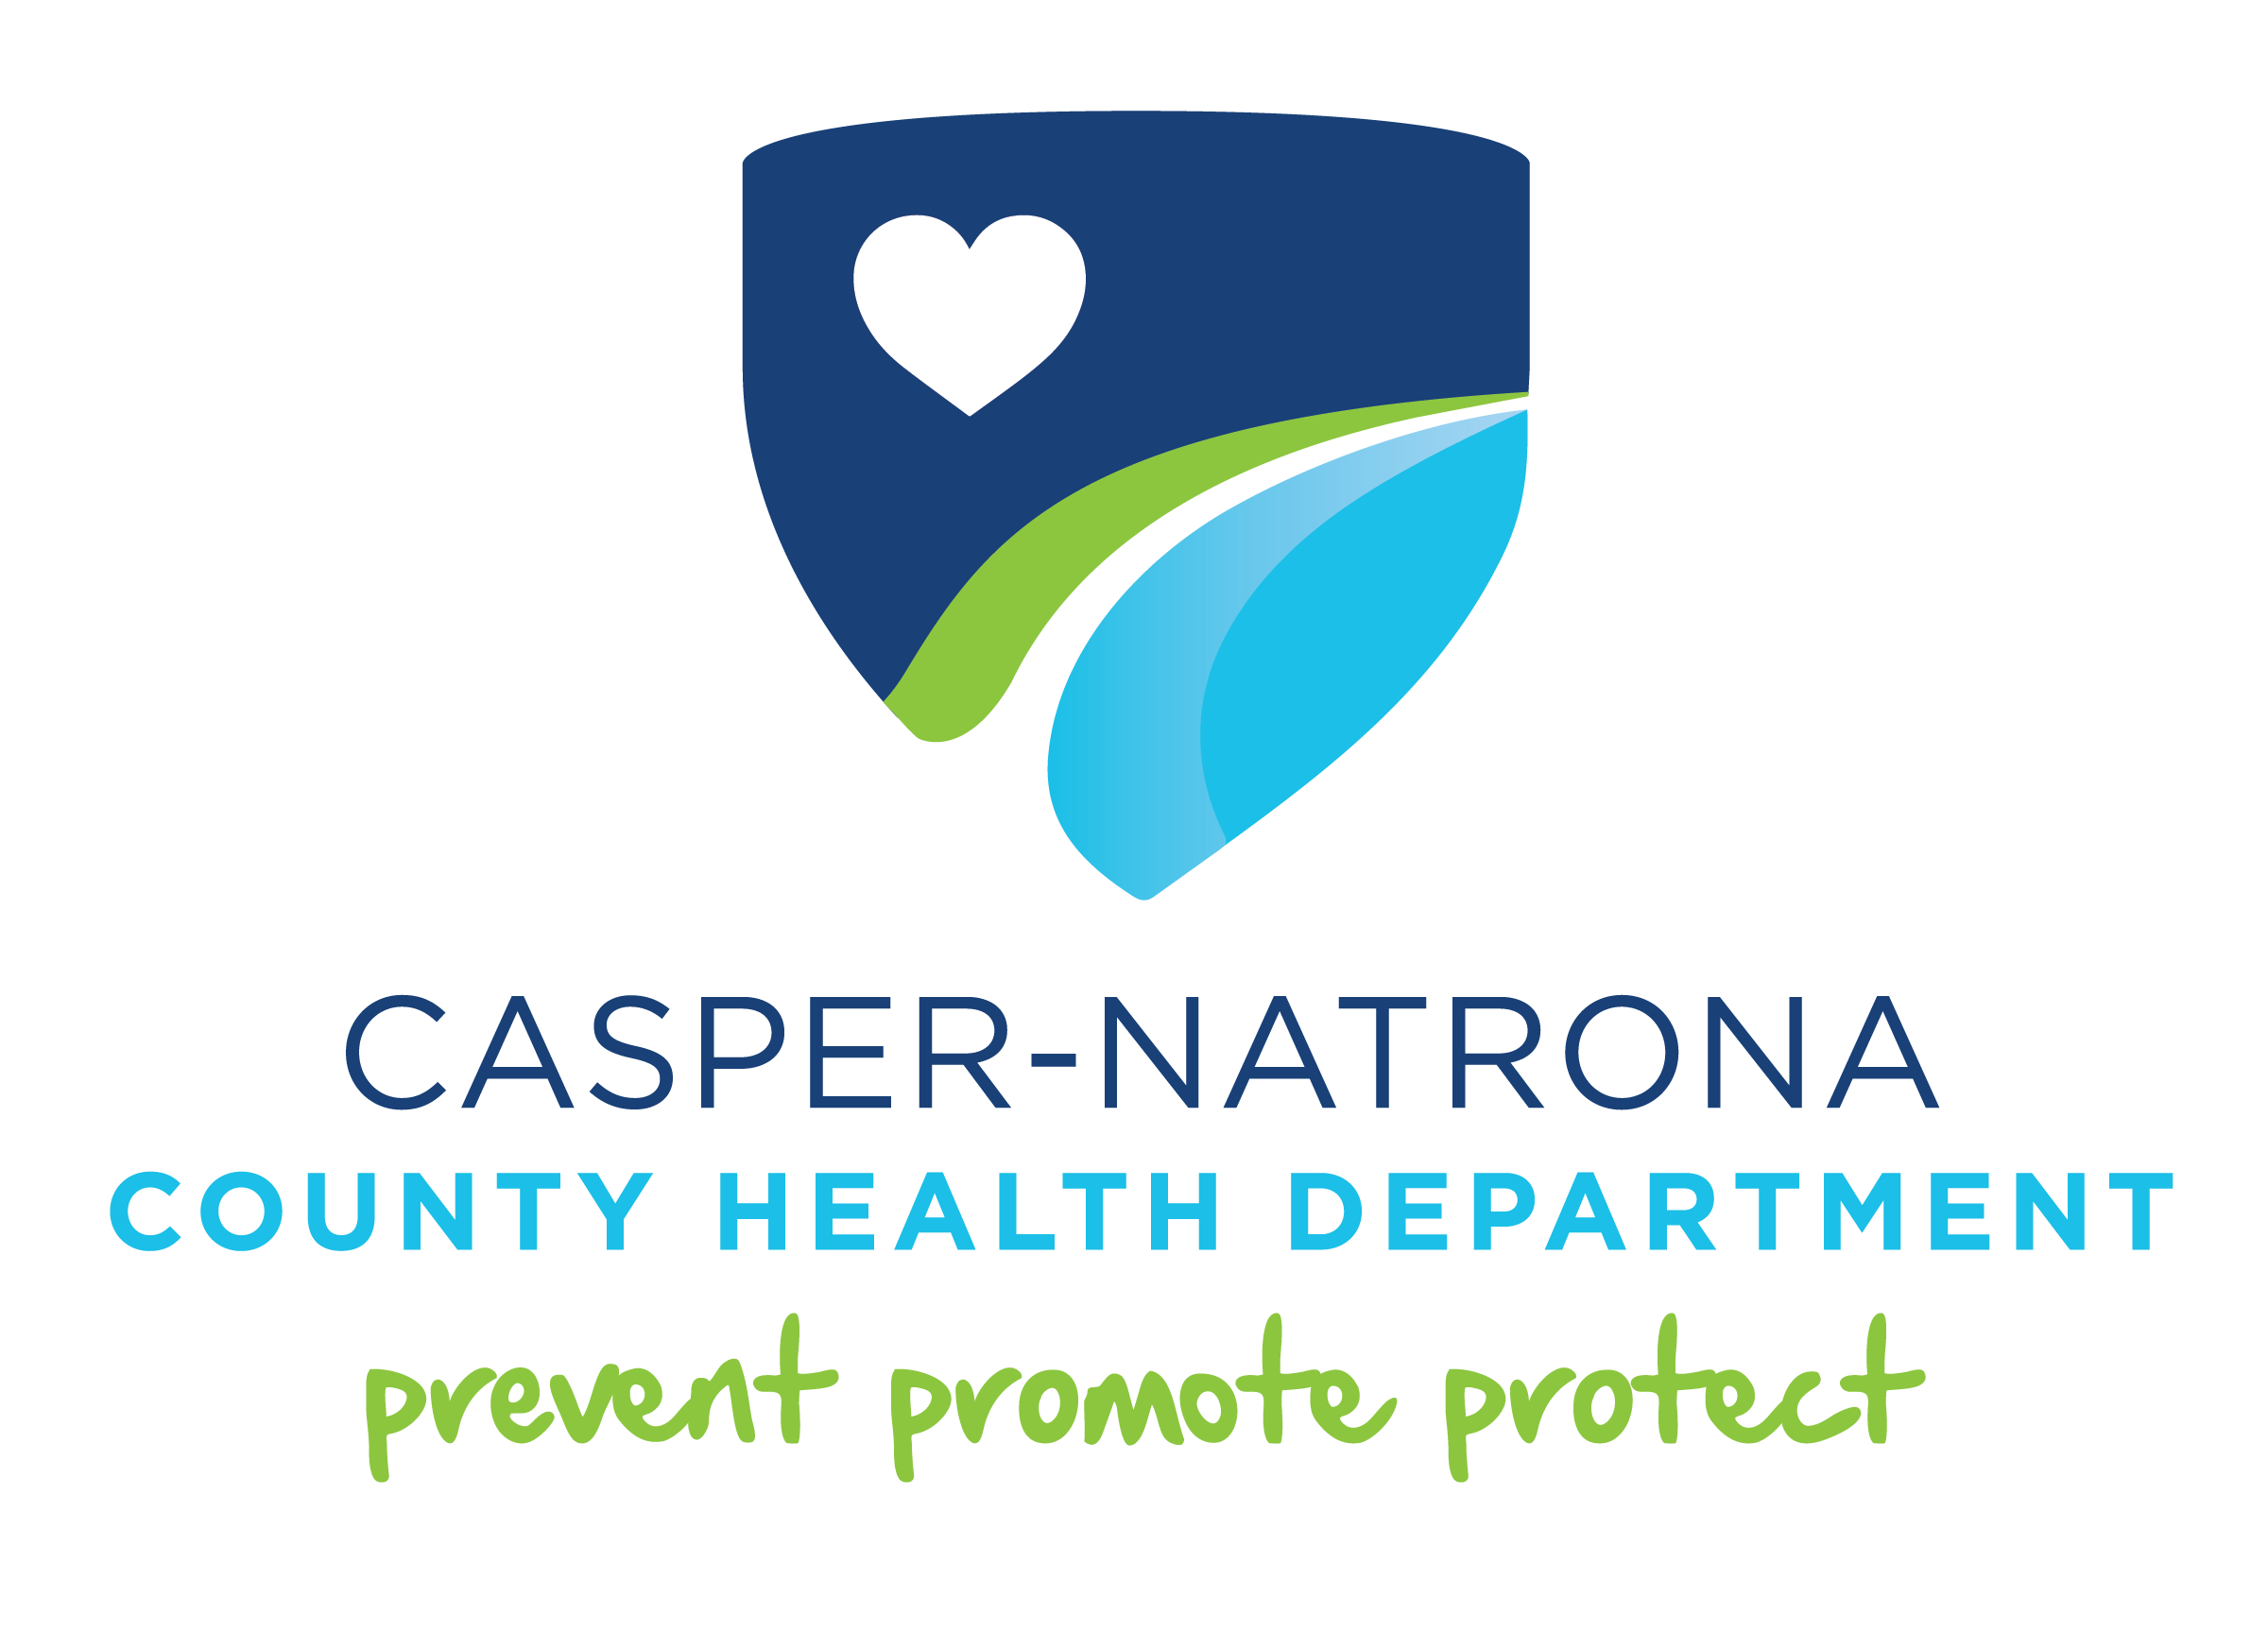 Casper-Natrona Health Department475 S. Spruce St. Casper, WY 82601 307-235-9340www.casperpublichealth.org